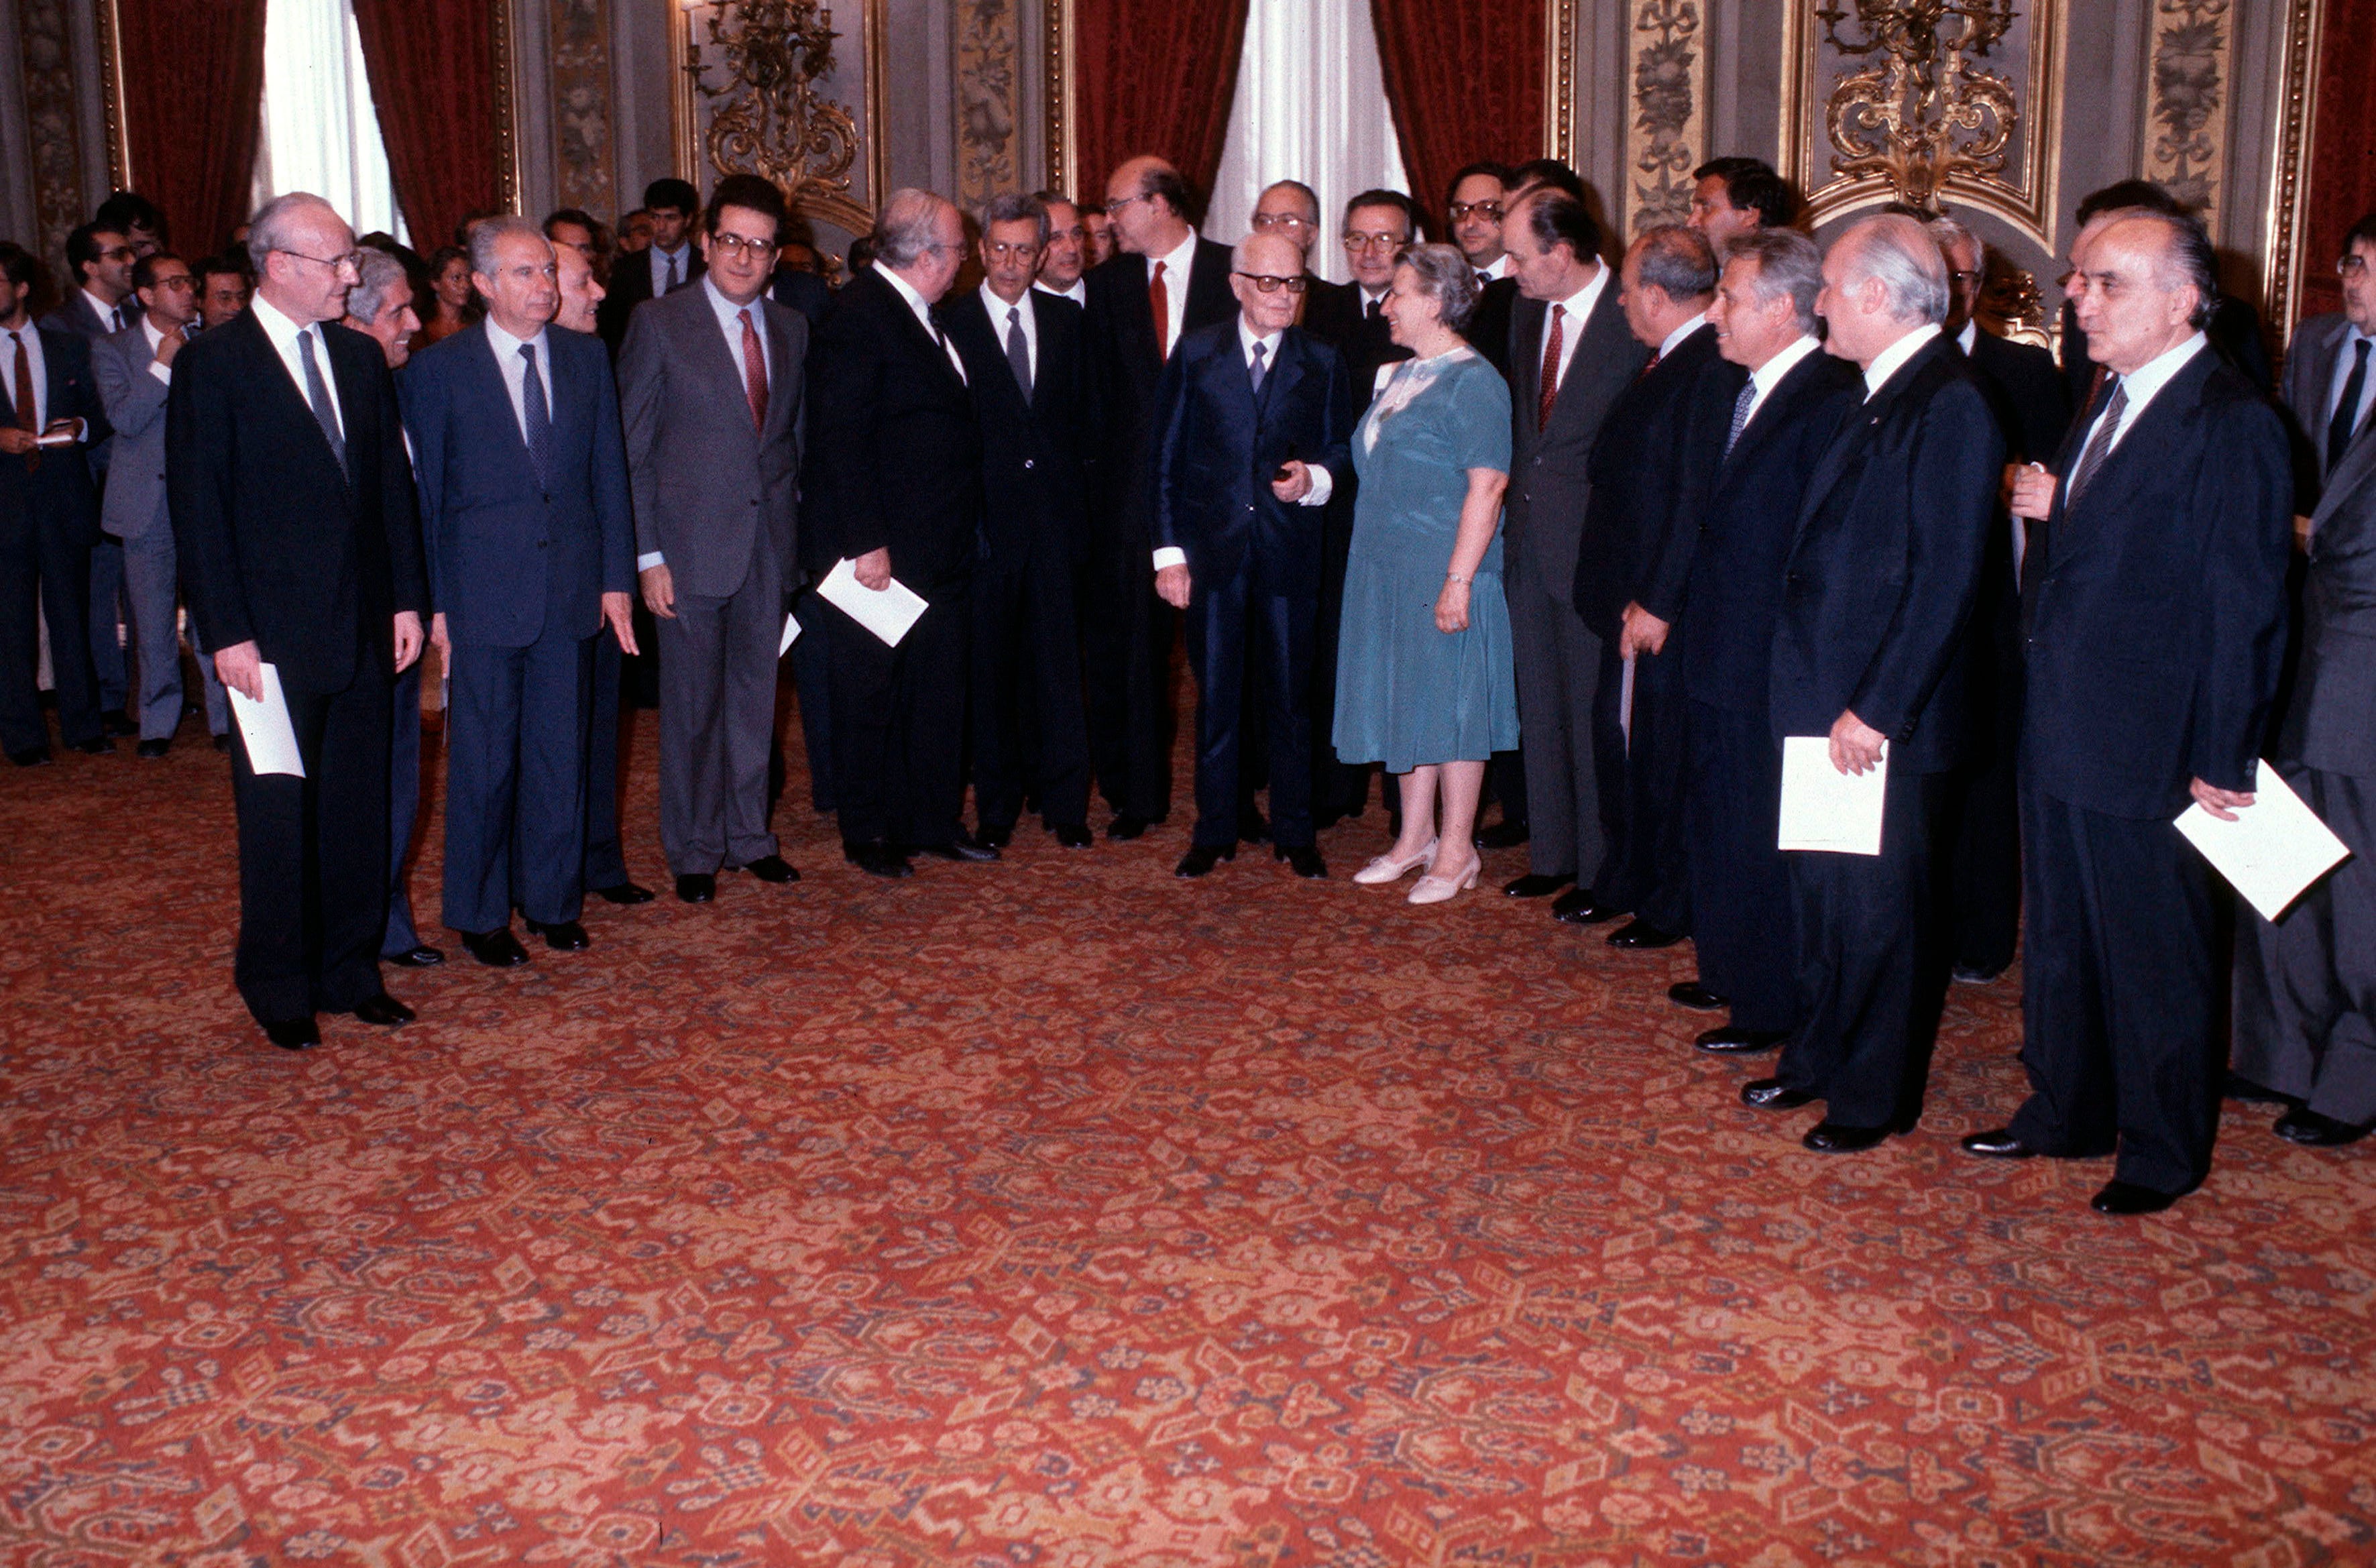 4 agosto 1983, giuramento al Quirinale del primo governo Craxi